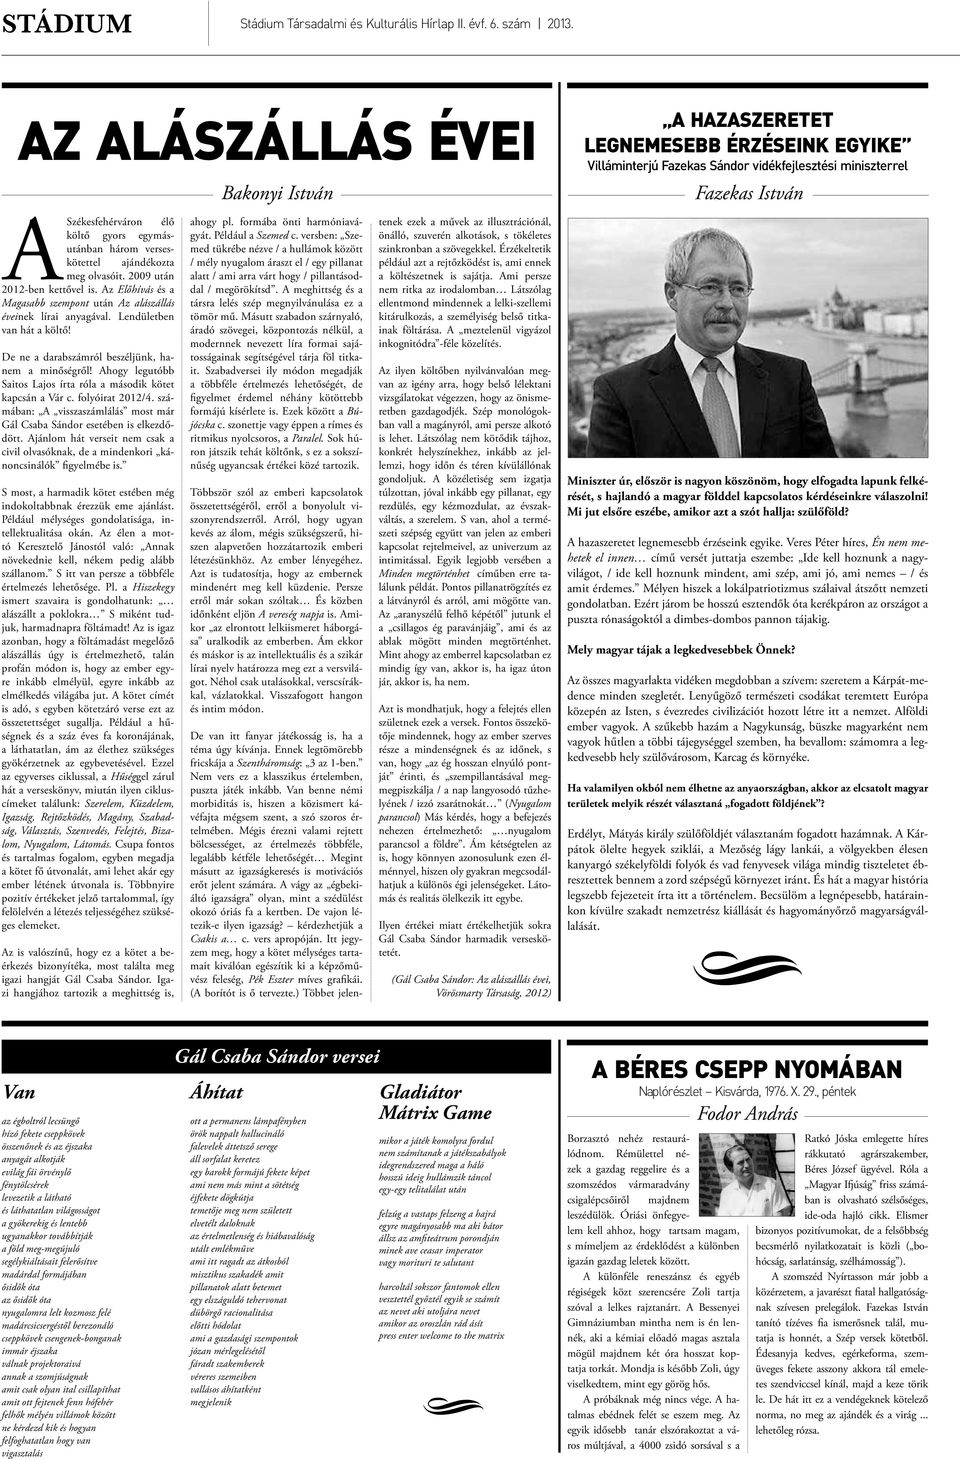 Ahogy legutóbb Saitos Lajos írta róla a második kötet kapcsán a Vár c. folyóirat 2012/4. számában: A visszaszámlálás most már Gál Csaba Sándor esetében is elkezdődött.